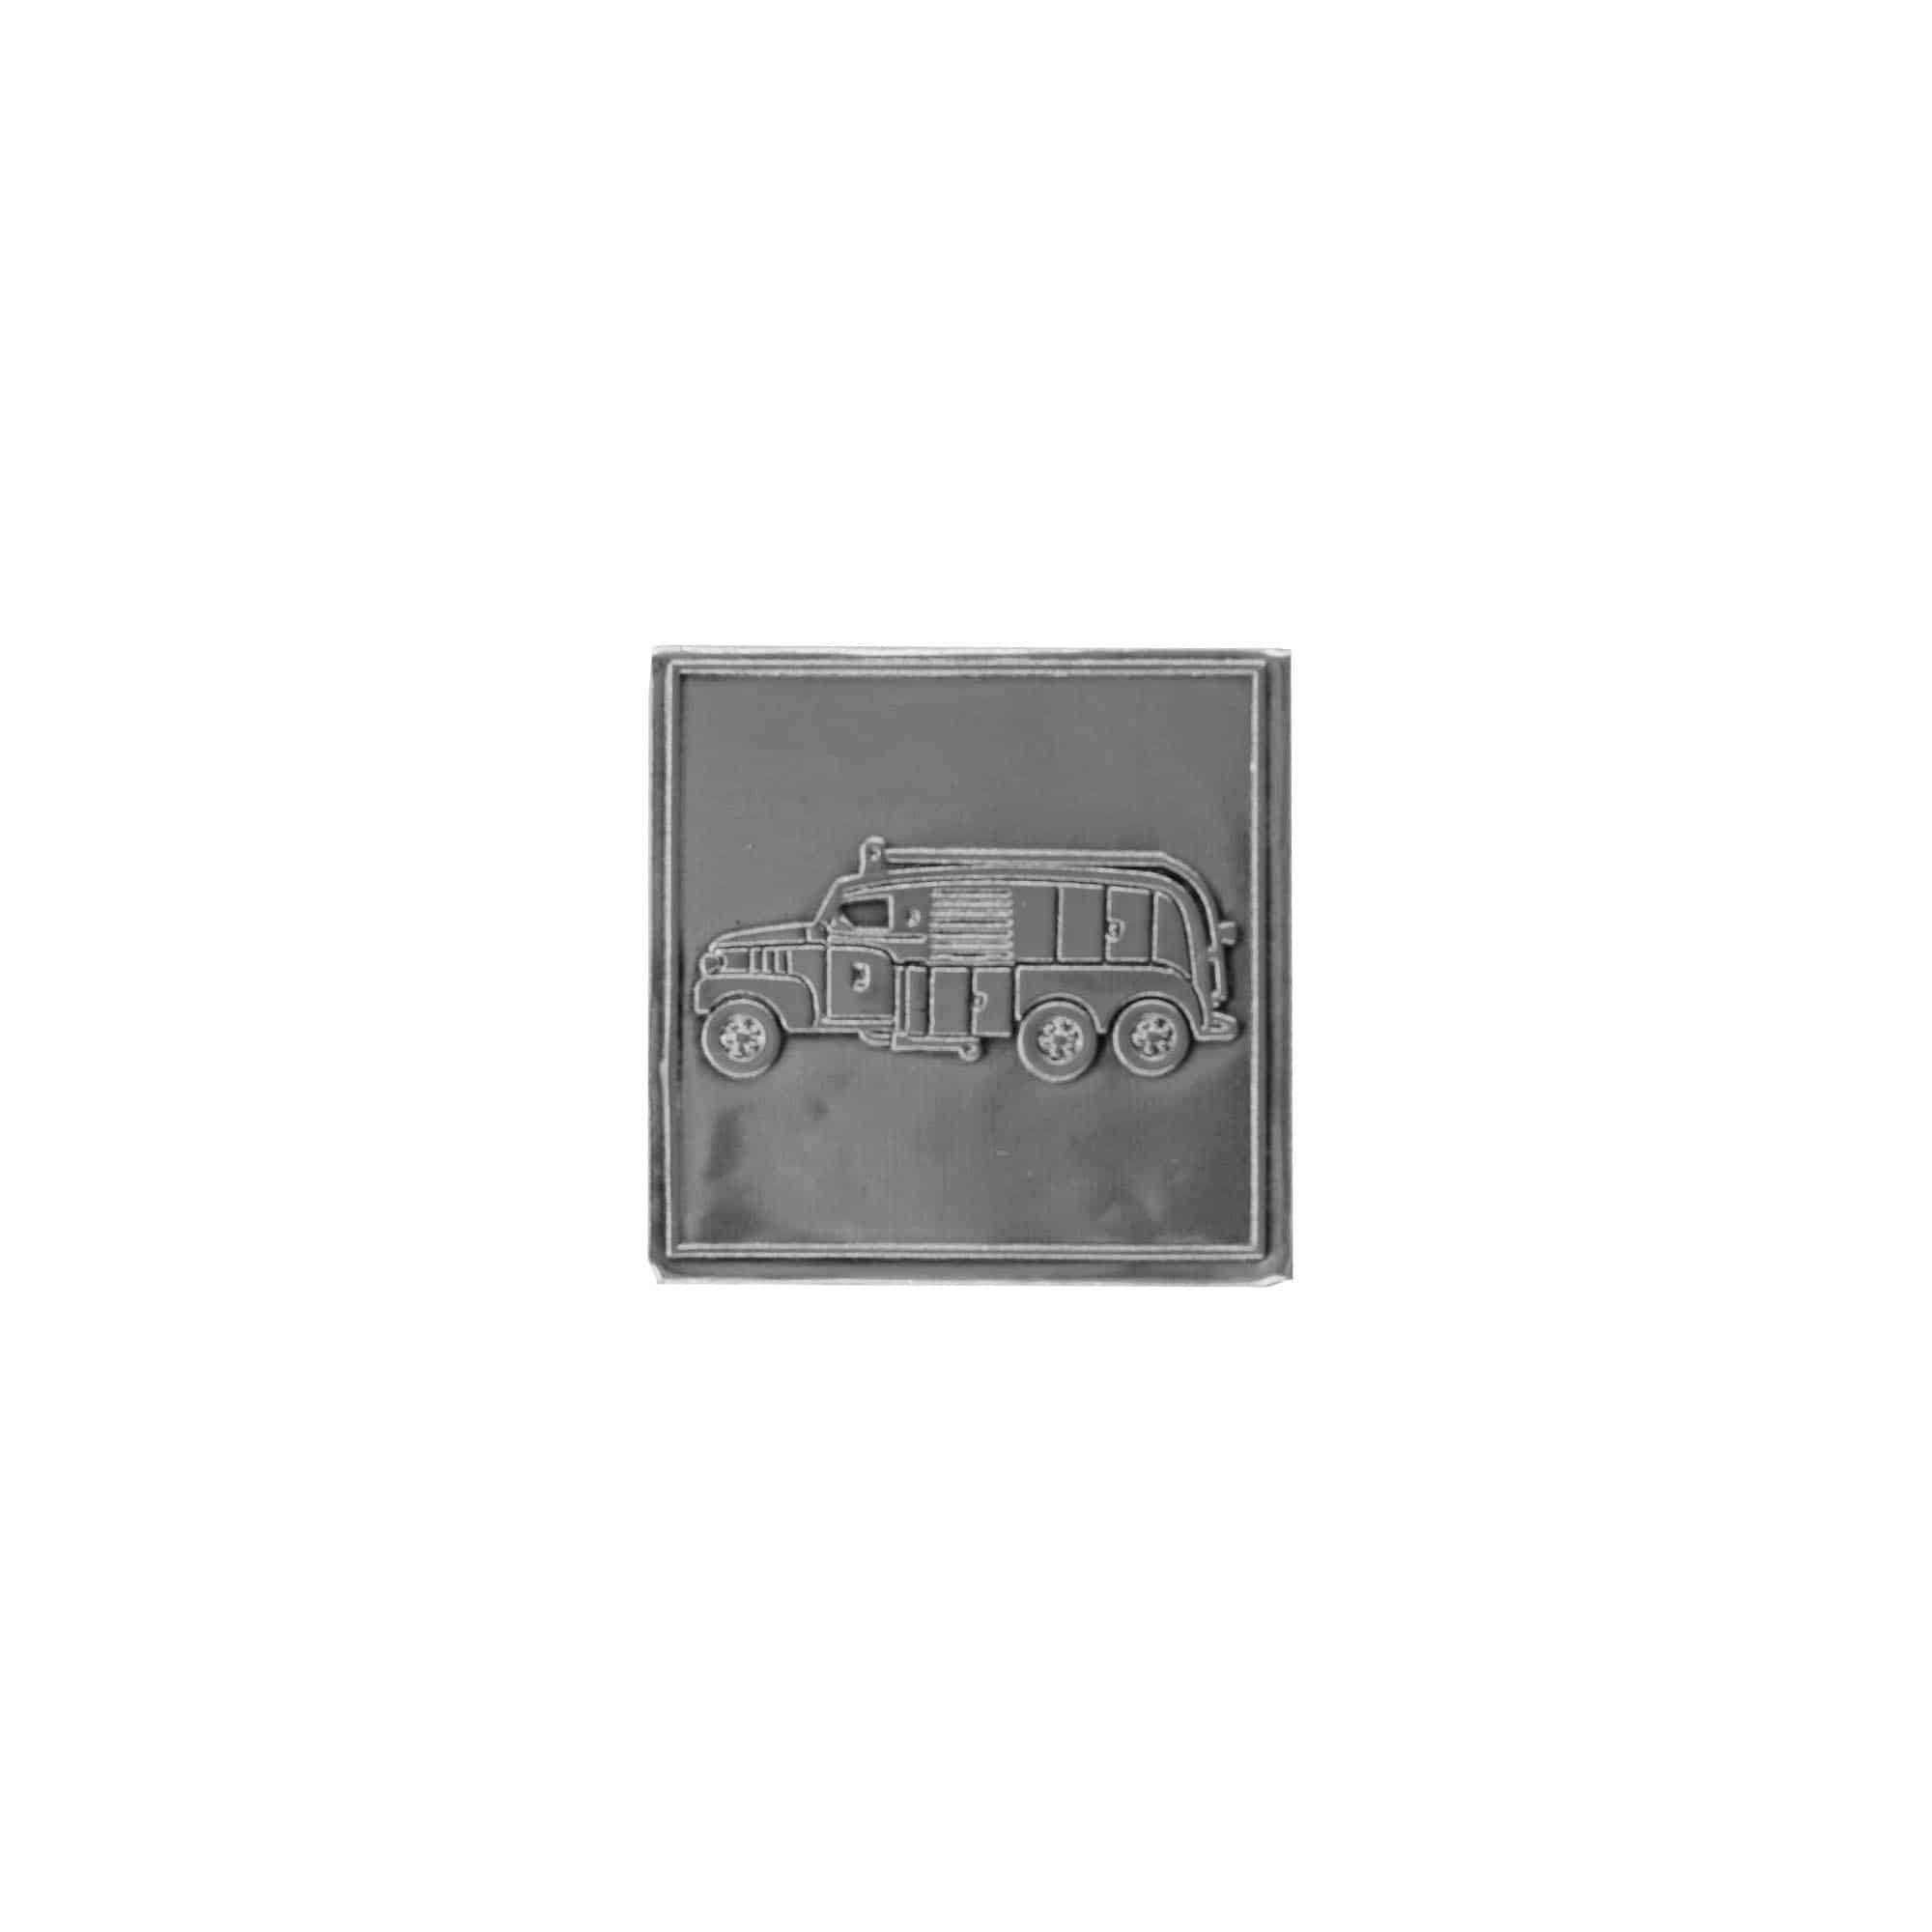 Etykieta cynowa 'Wóz strażacki', kwadratowa, metal, kolor srebrny